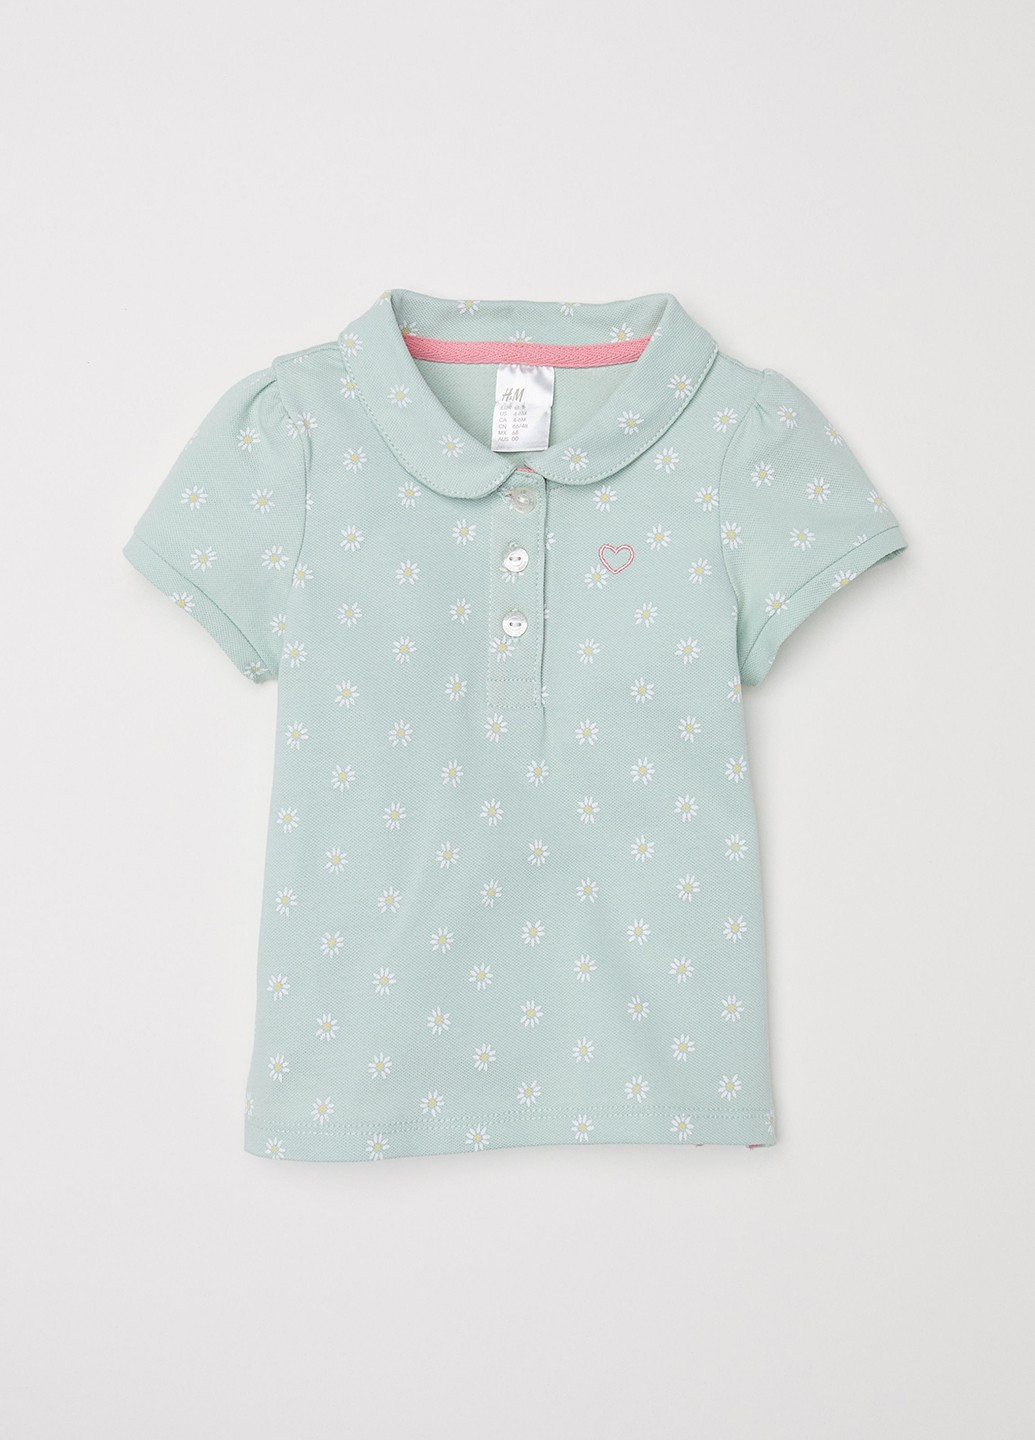 Зеленая детская футболка-поло для девочки H&M с цветочным принтом